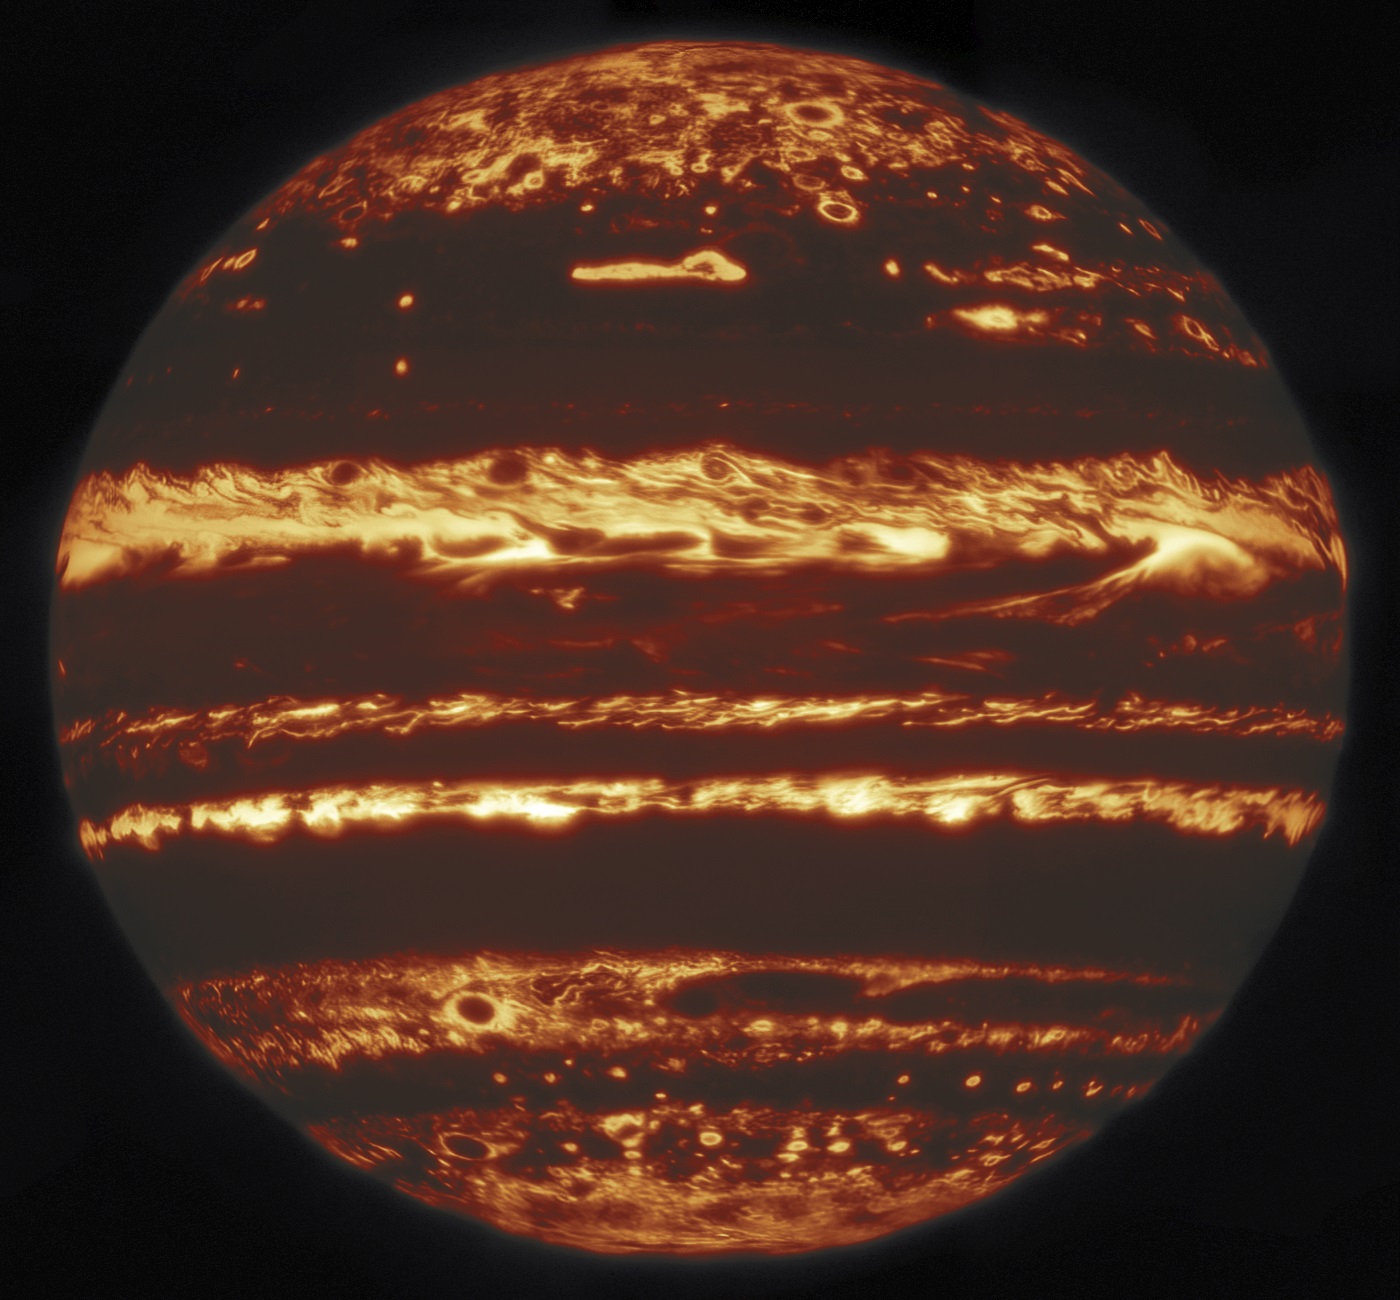 ภาพถ่ายดาวพฤหัสบดีในช่วงคลื่นอินฟราเรดความละเอียดสูงที่สุดที่ถ่ายจากกล้องโทรทรรศน์บนพื้นโลก